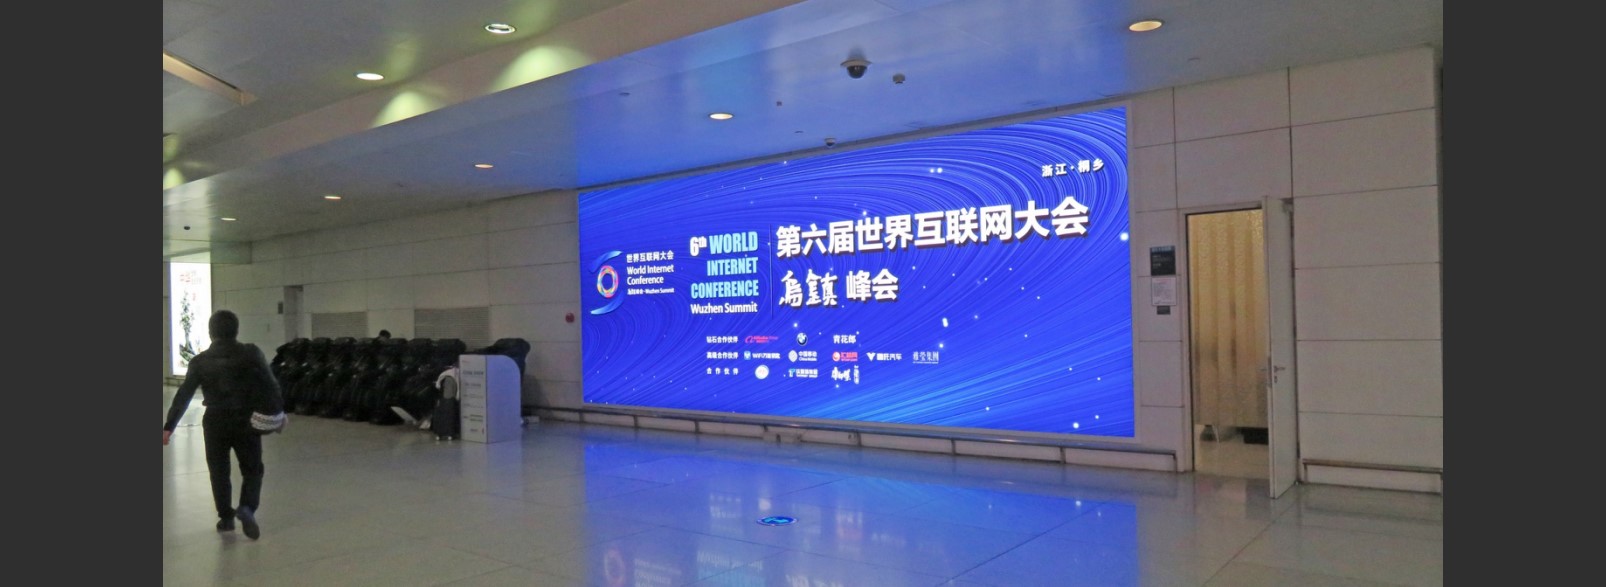 杭州萧山机场广告-T3迎客厅灯箱DB90